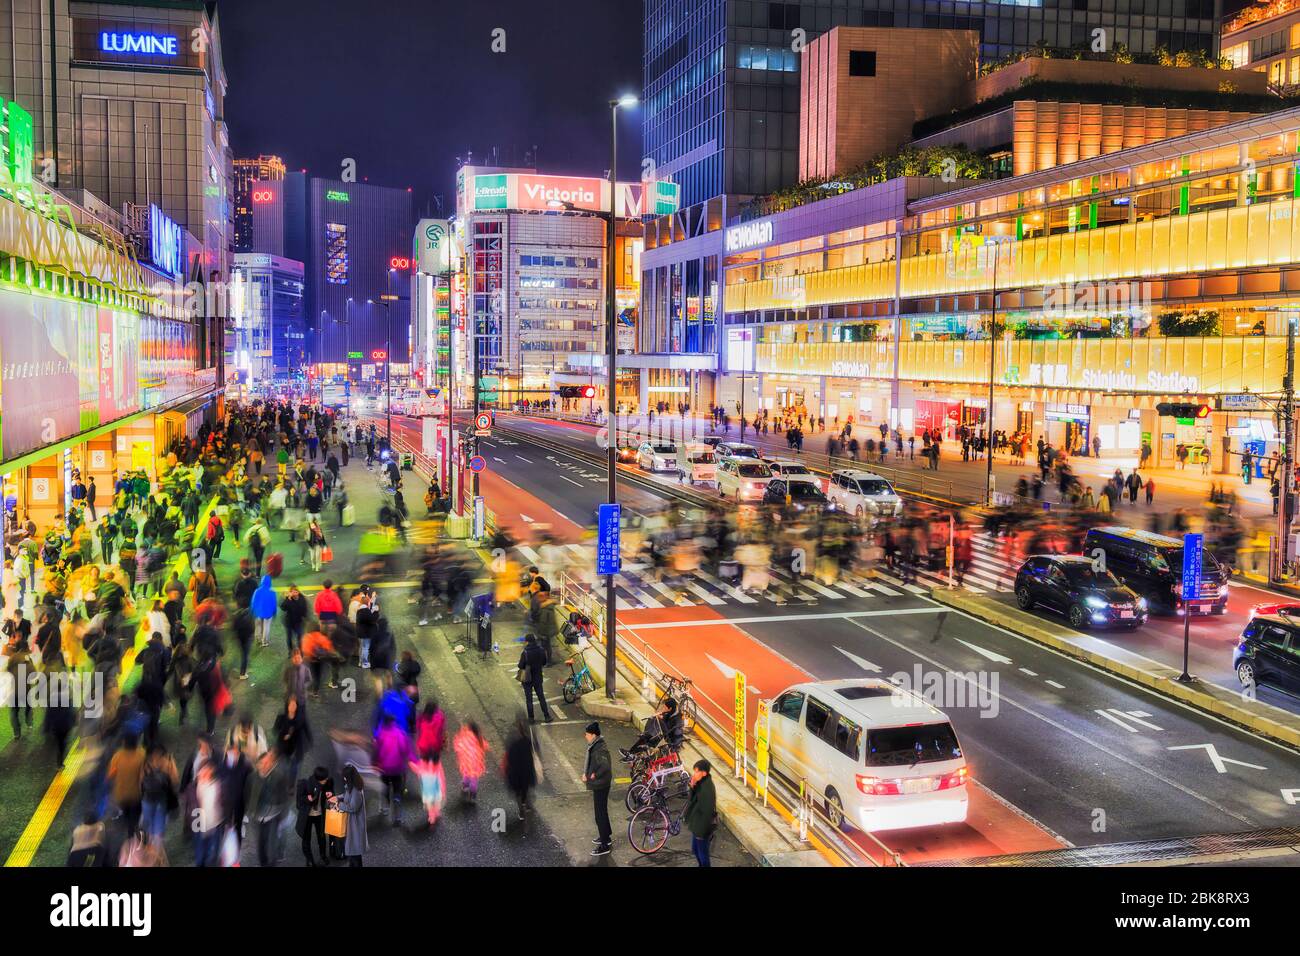 Tokyo, Giappone - 31 Dic 2019: Strada trafficata che attraversa vicino alla stazione di Shinjuku a Toky di notte con luci luminose. Foto Stock